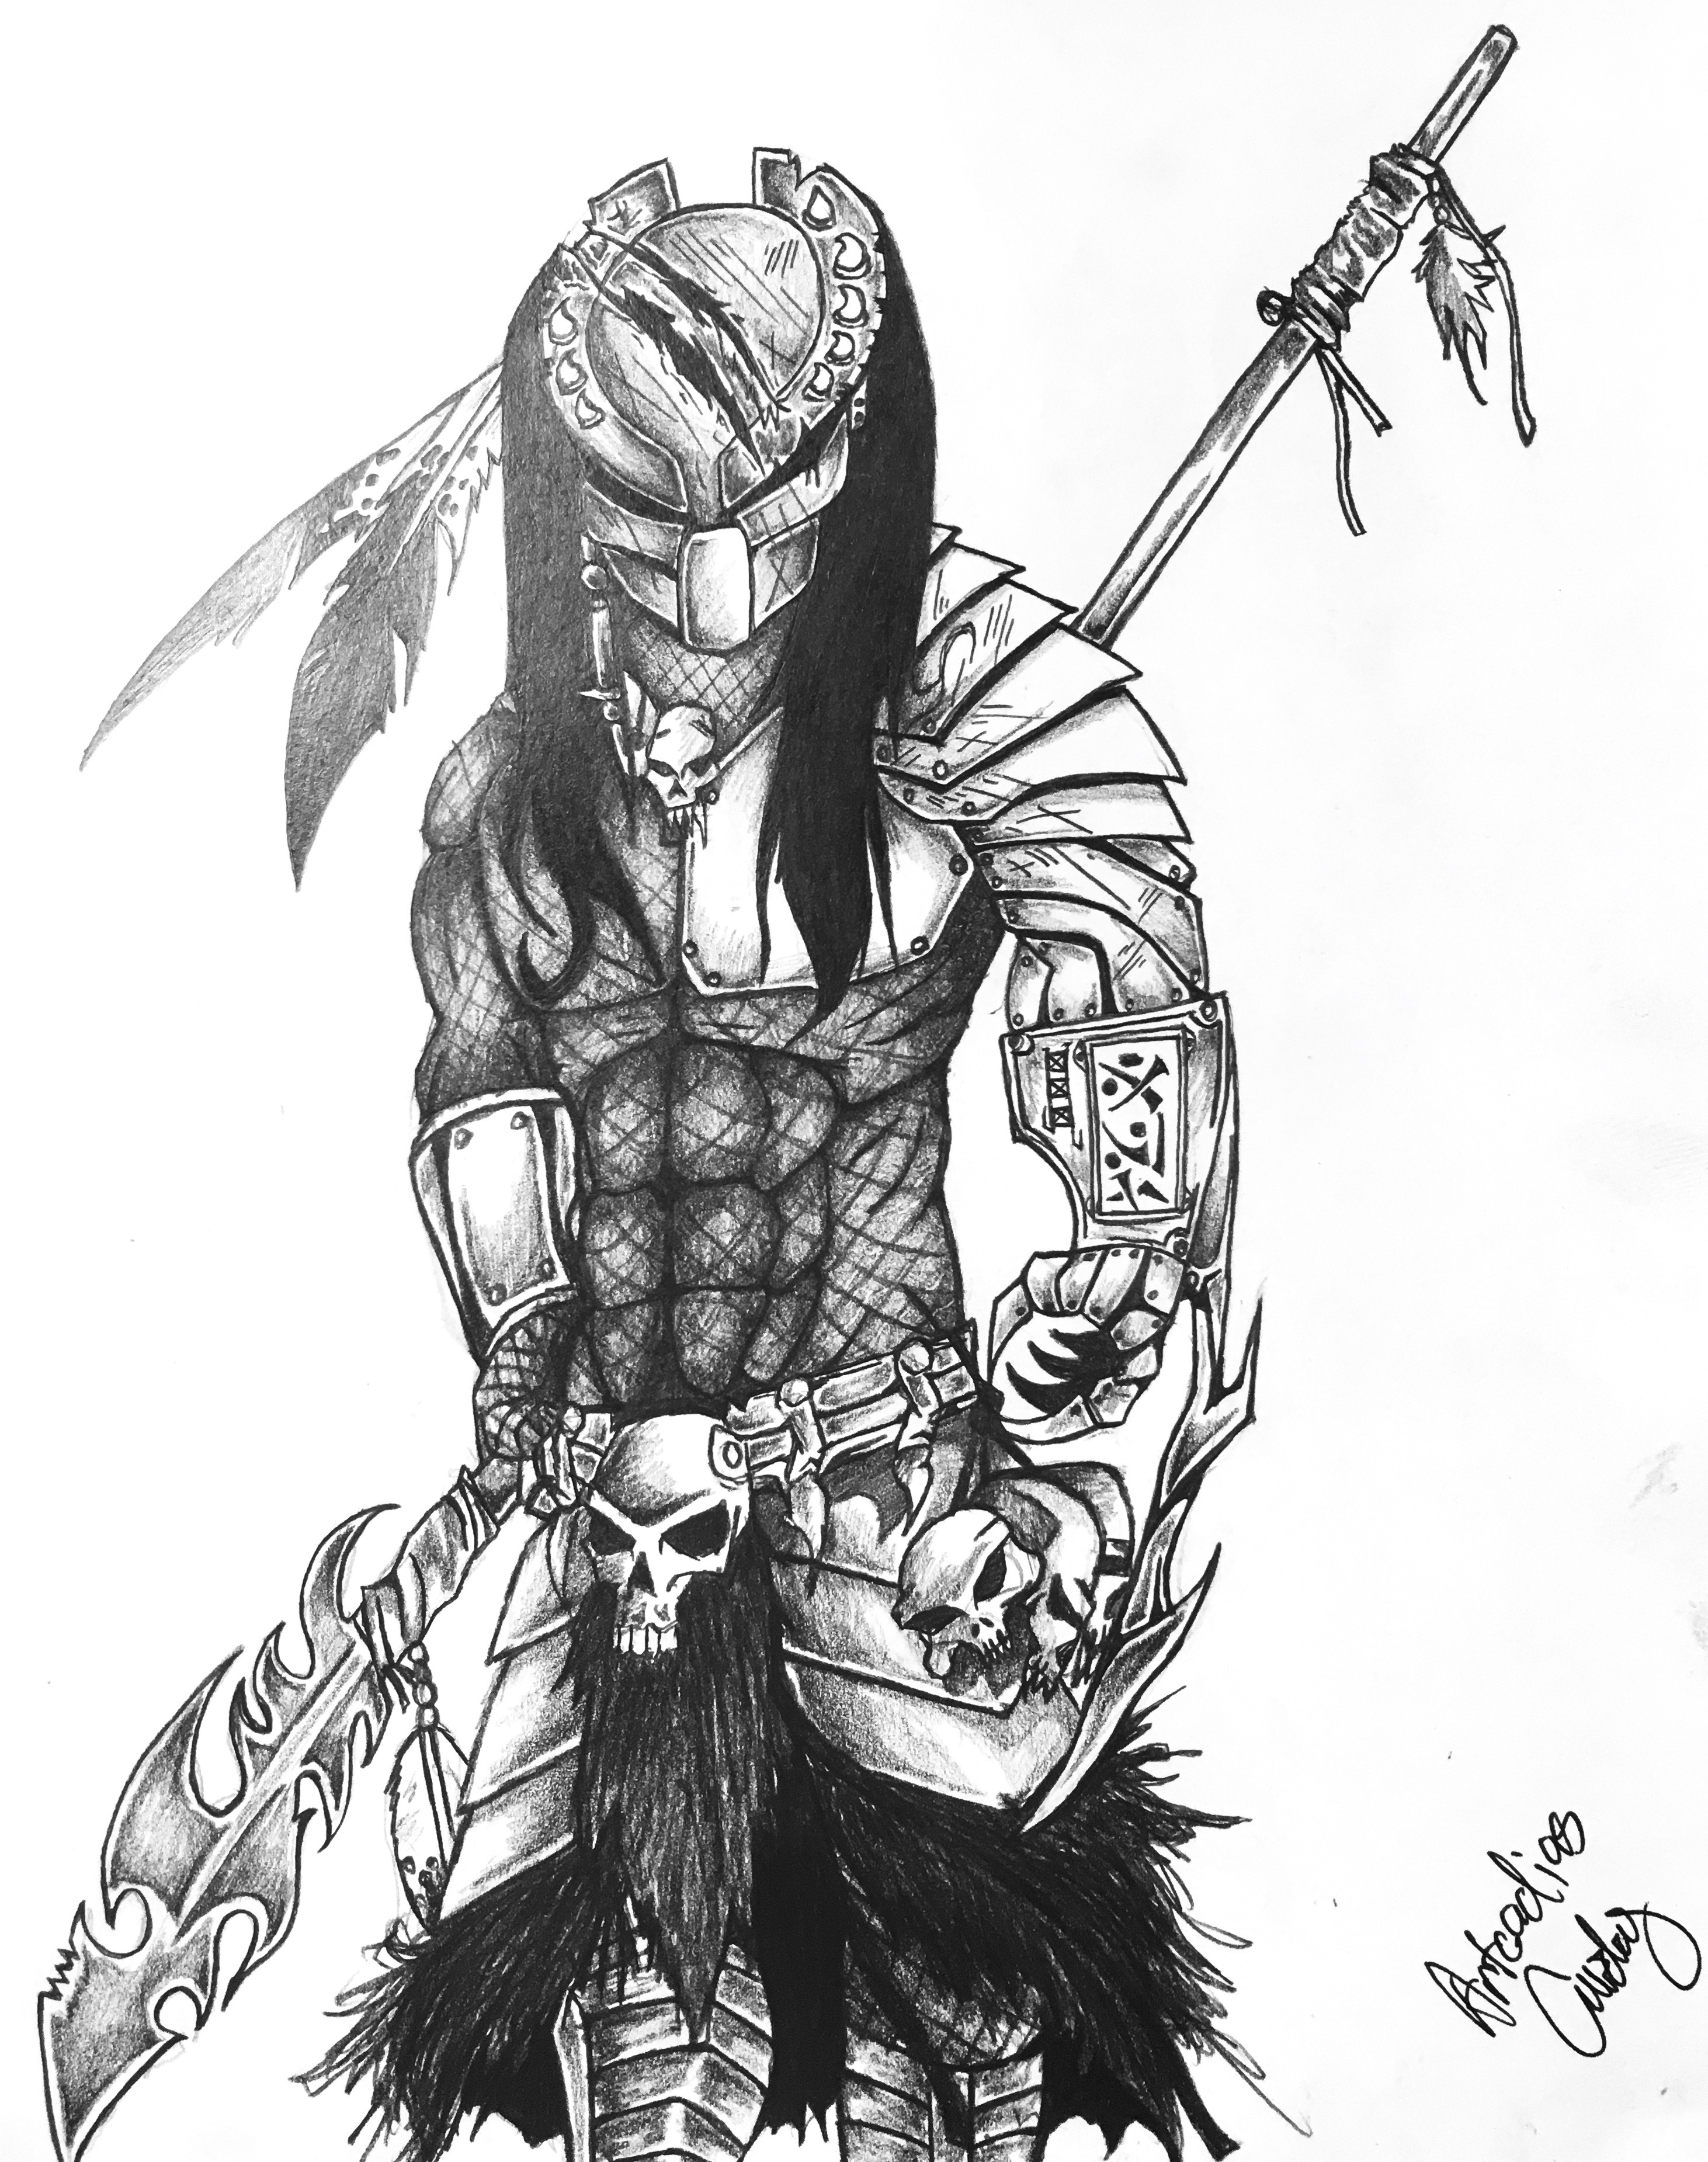 Warrior Art Sketch by Artcadius Curley 02